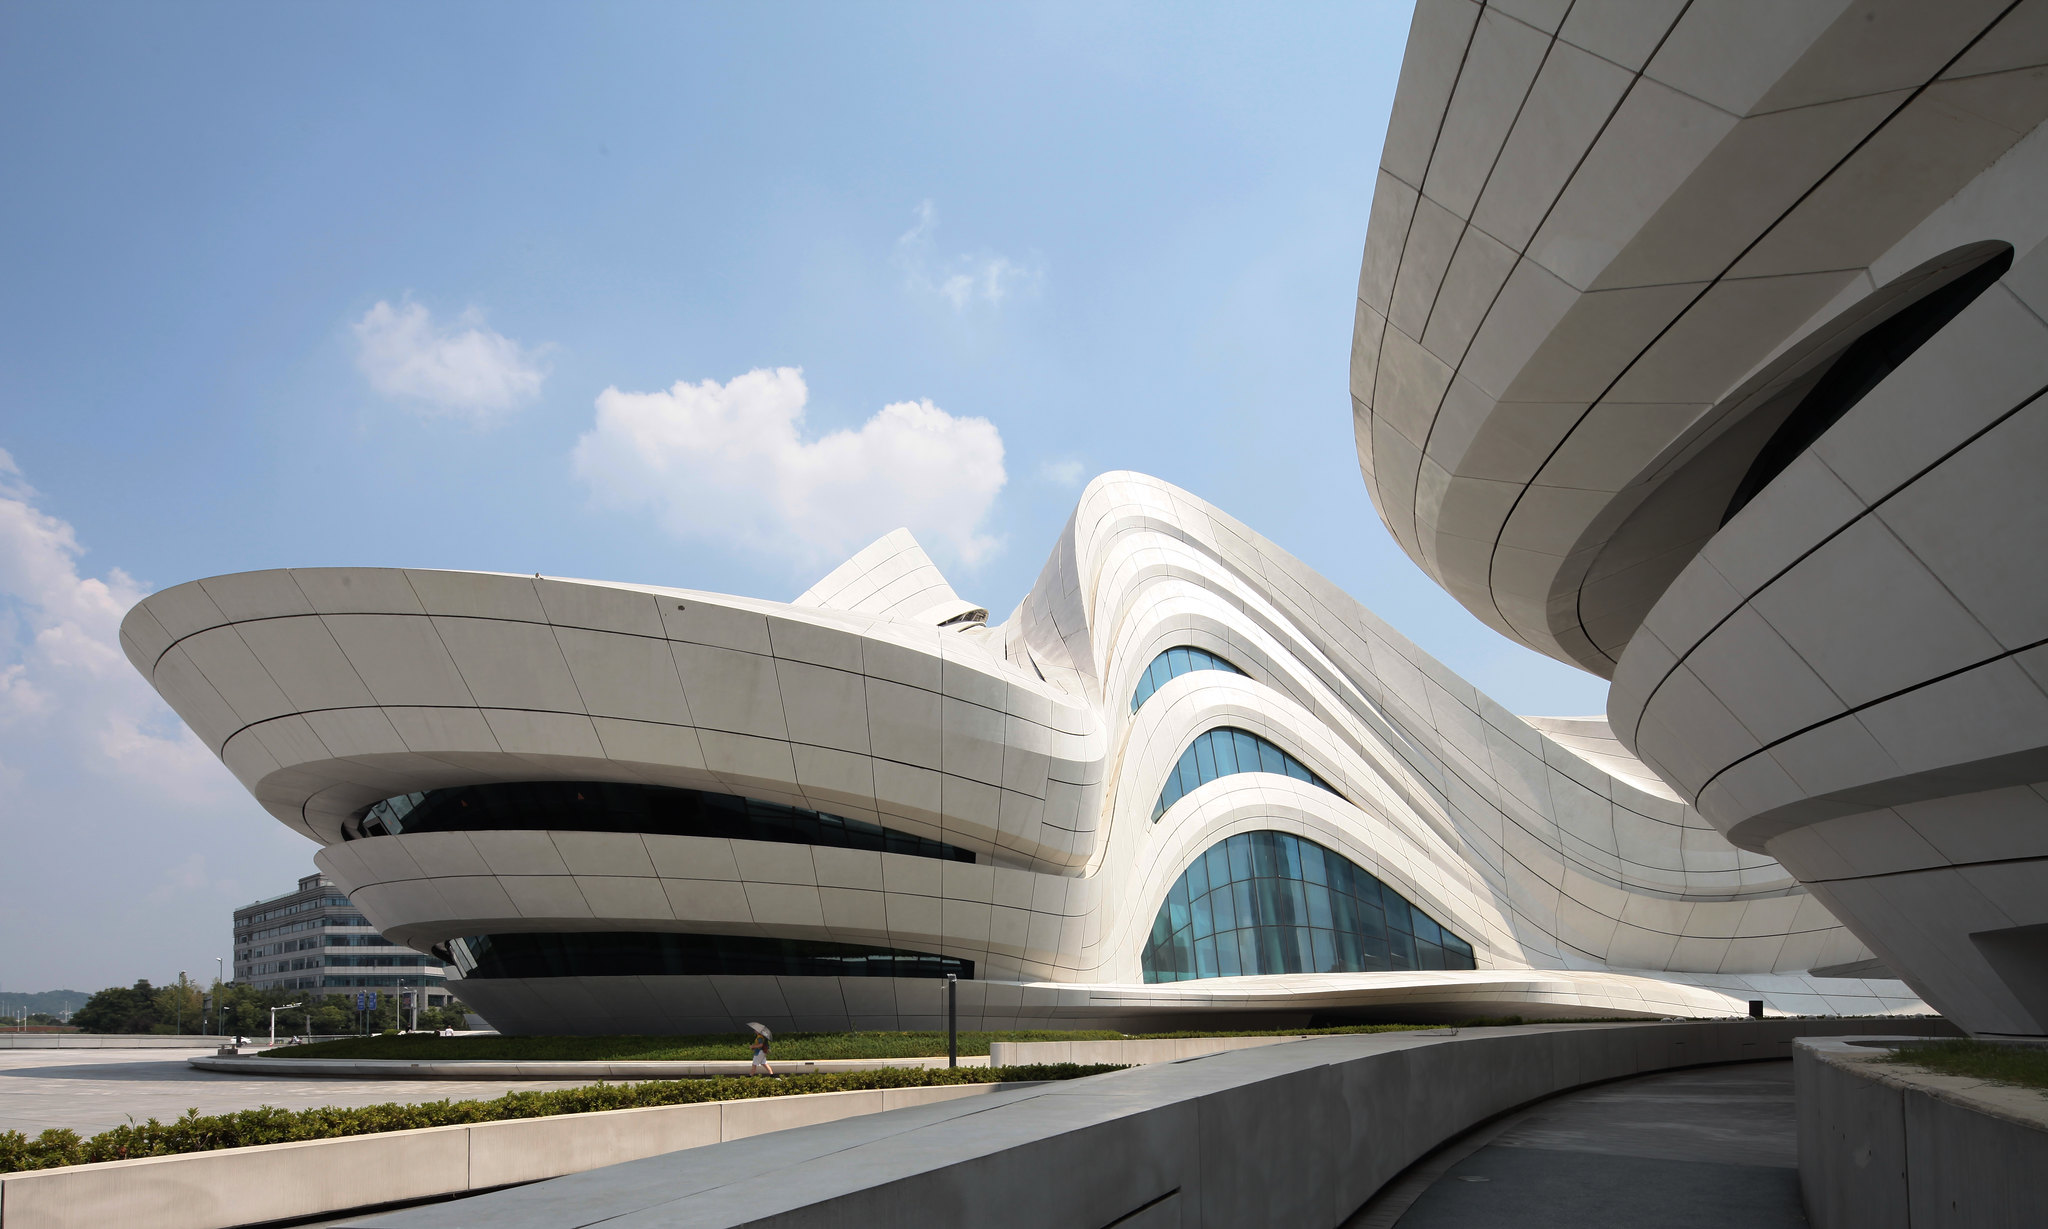 O estilo arquitetônico desenvolvido por Zaha Hadid é como uma assinatura